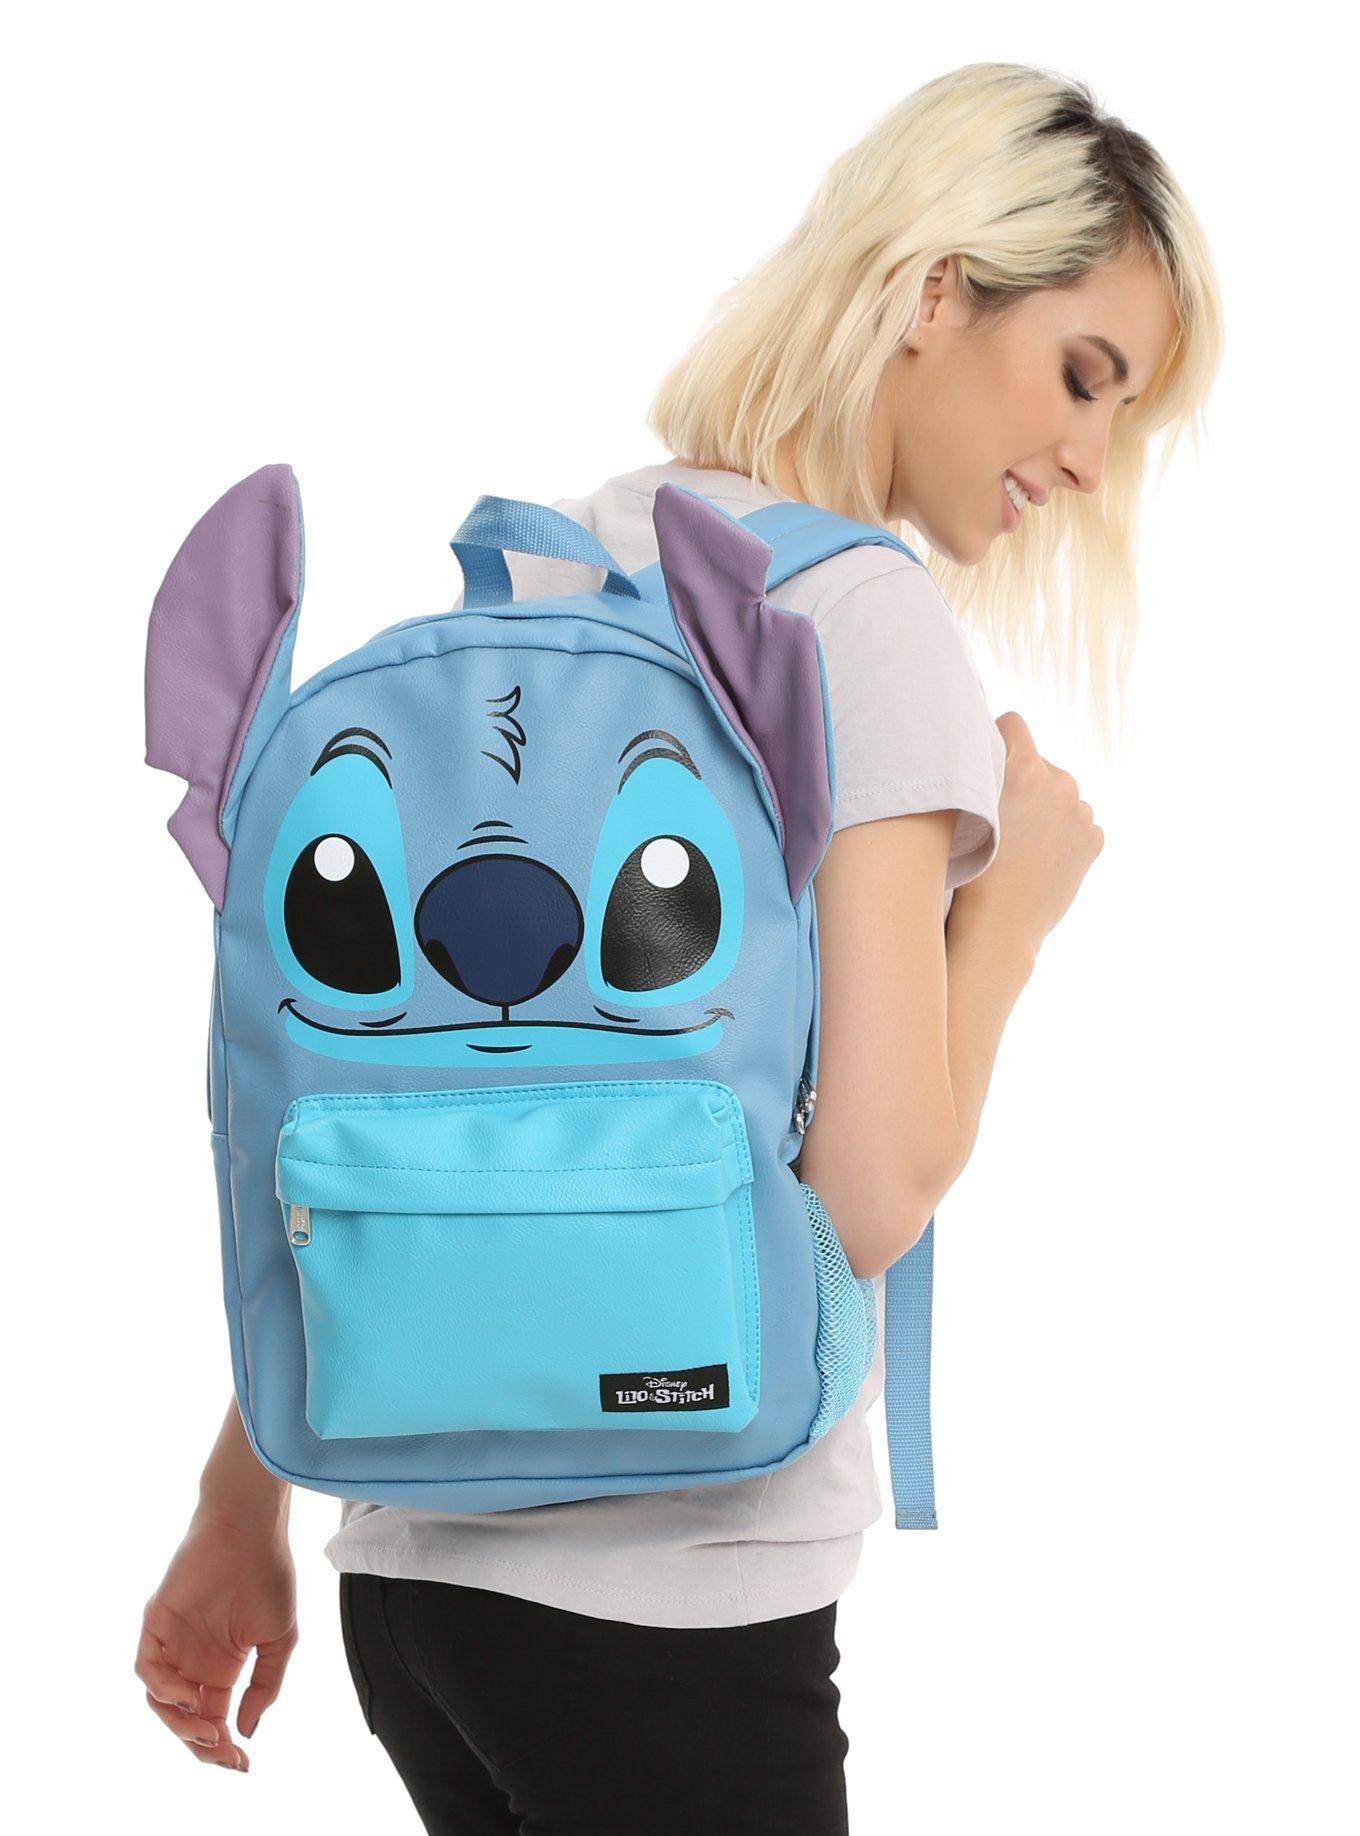 Disney Lilo Stitch School Backpacks, Stitch Disney School Bag